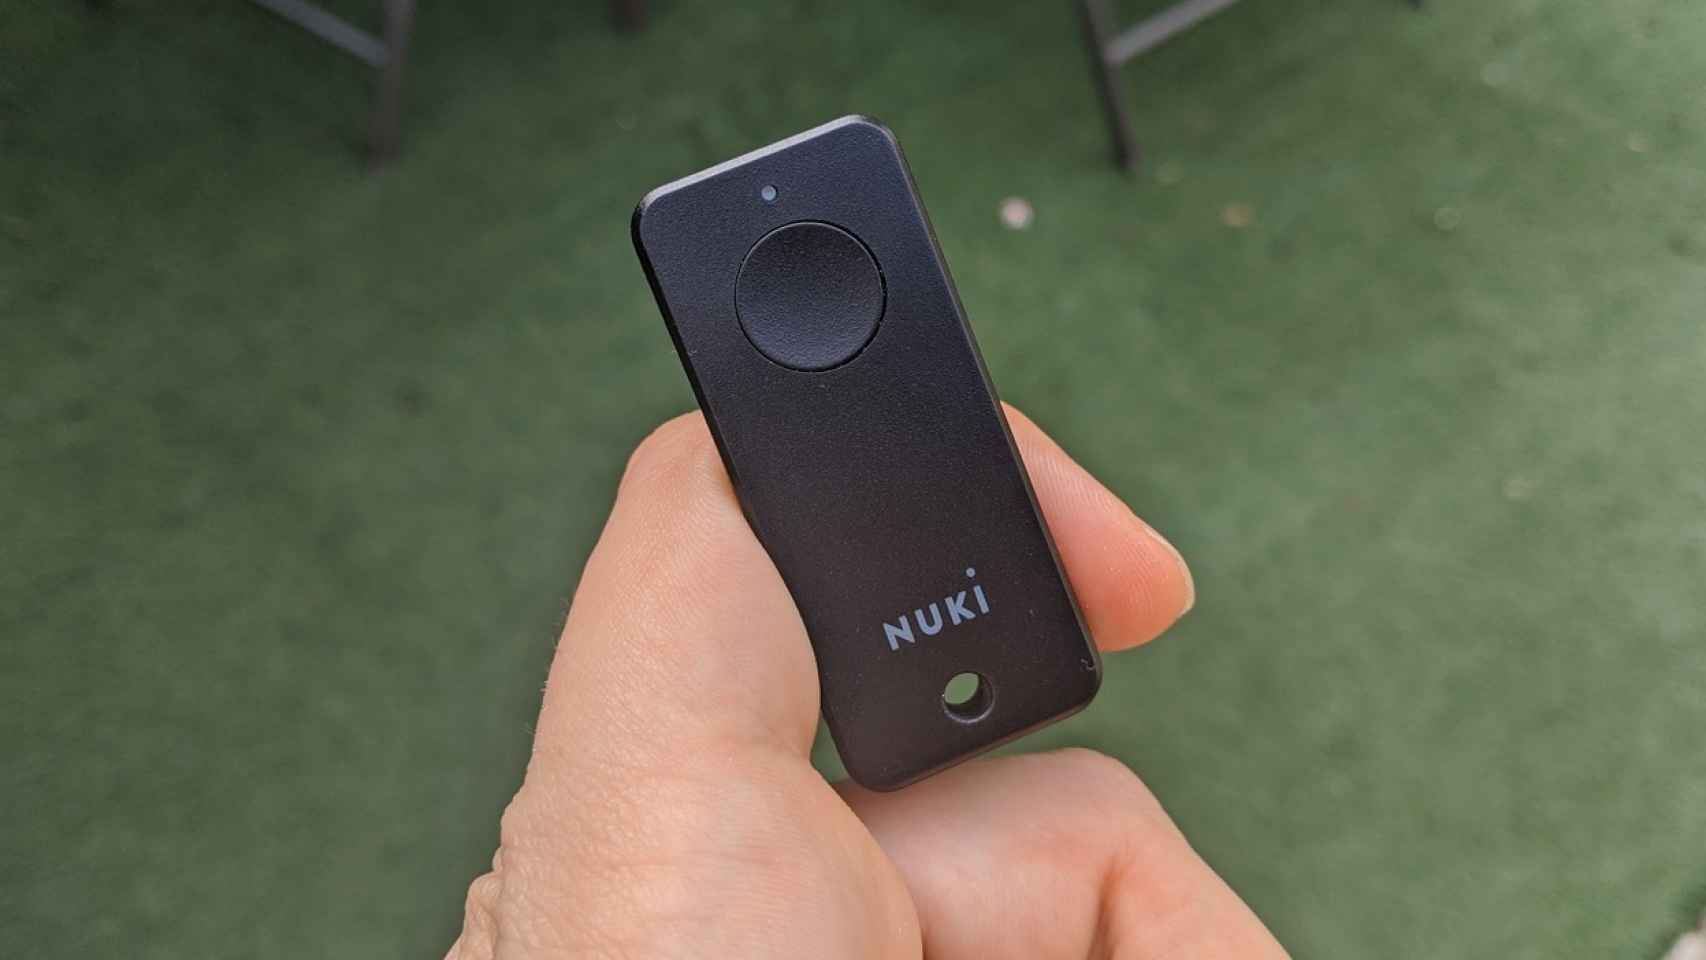 Confiarías en una cerradura inteligente? Probamos la Nuki Smart Lock 2.0